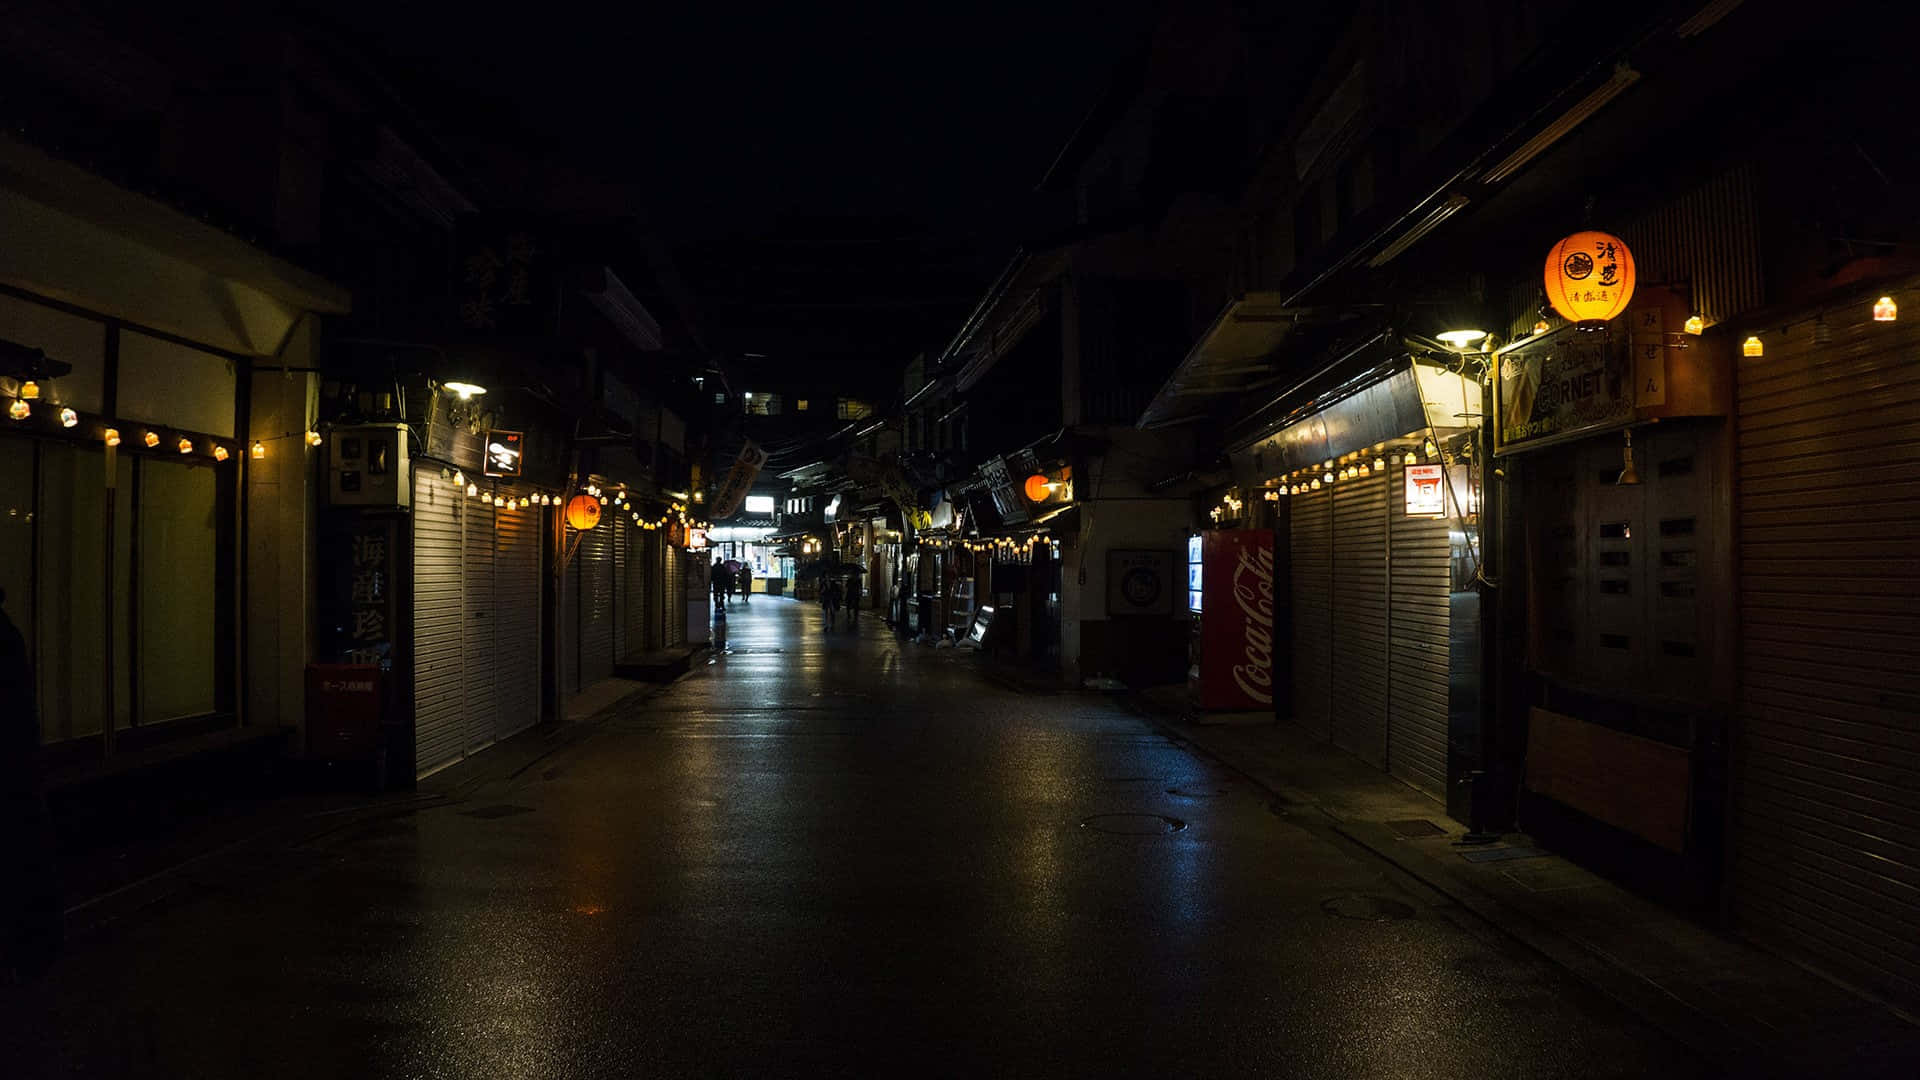 Itsukushima Street Alley Background